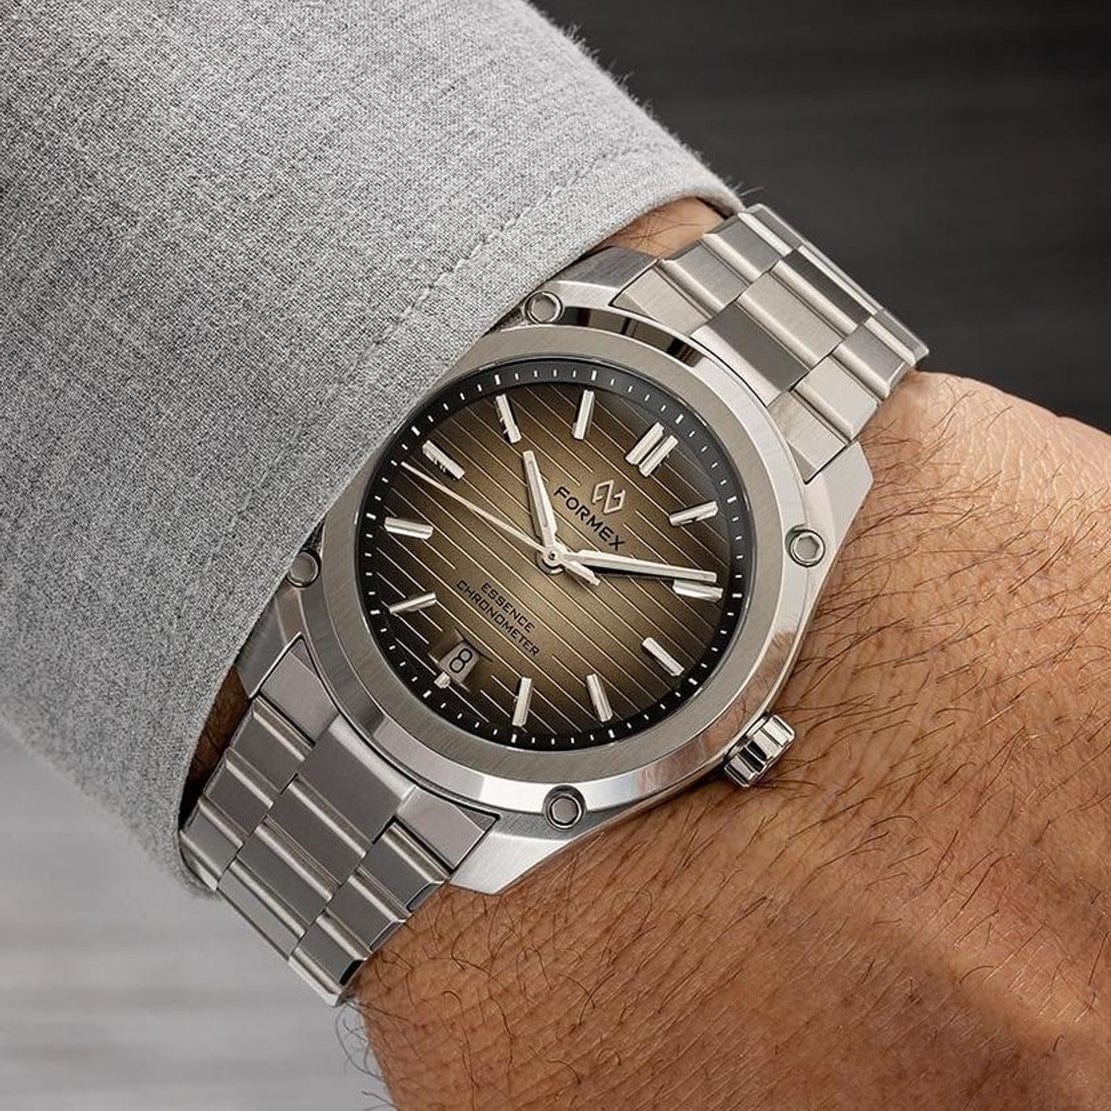 Formex Essence 39 Automatic Chronometer Watch - Dégradé Grey / Steel Bracelet - NEARLY NEW